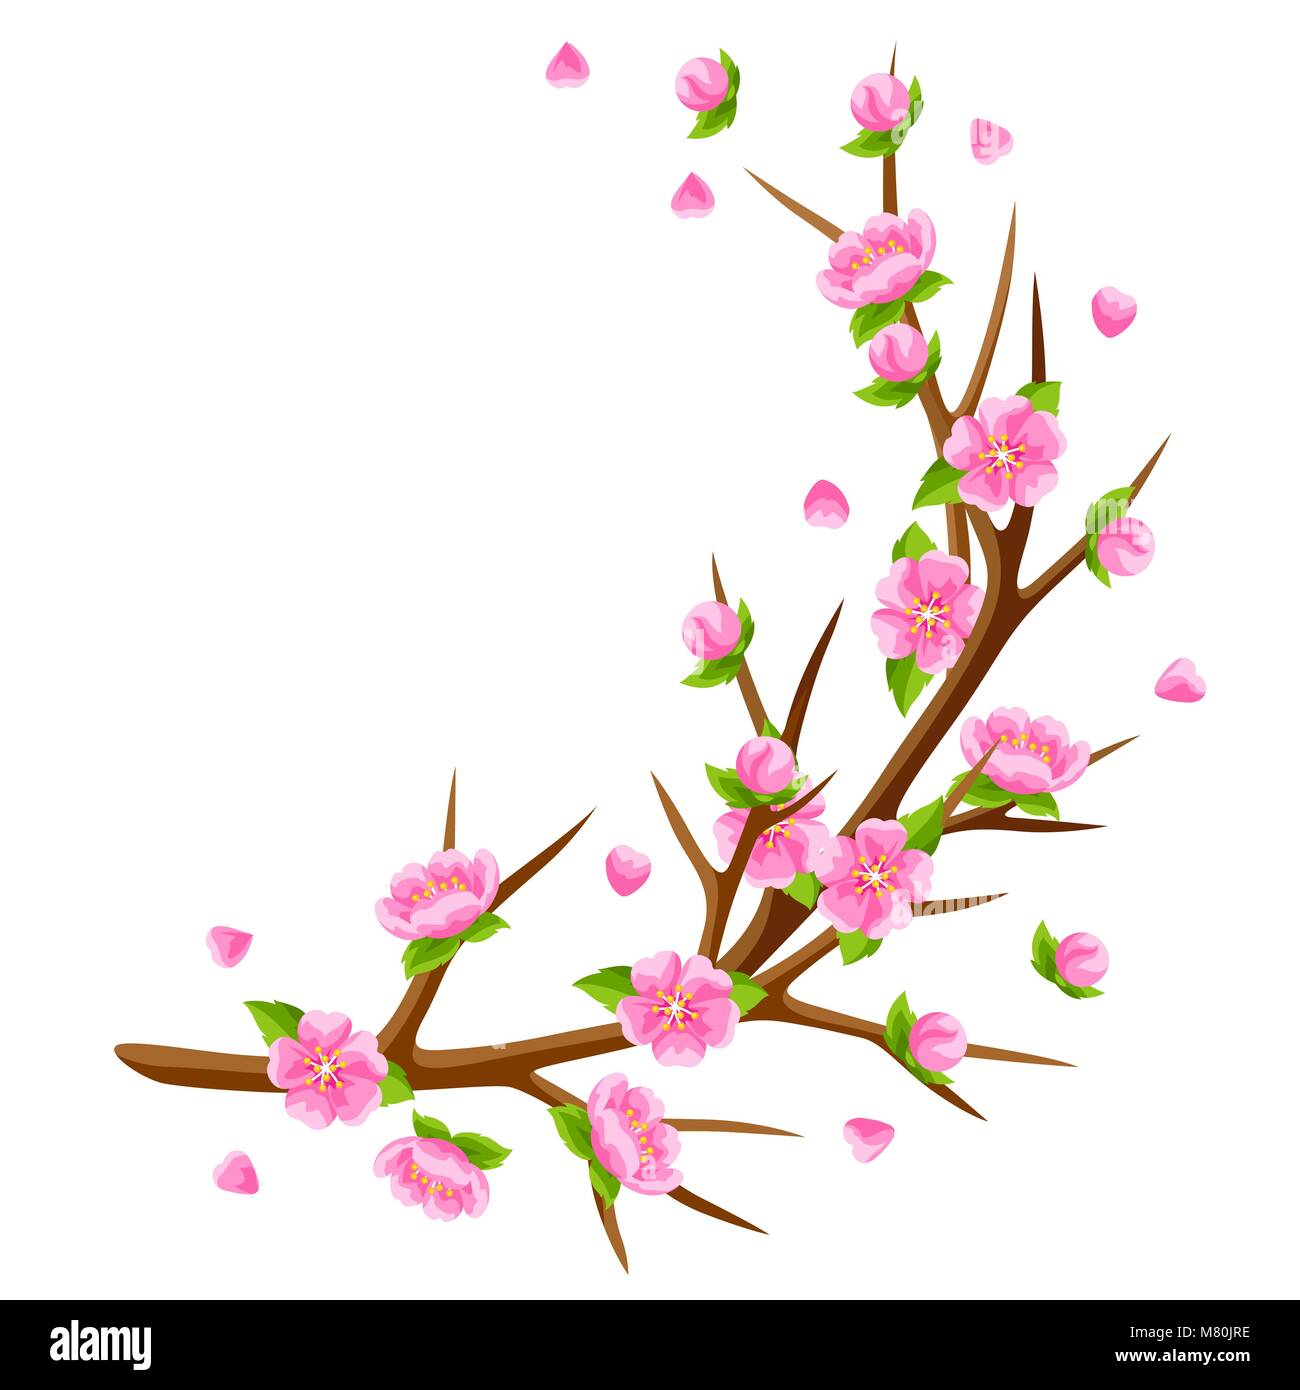 Direction générale de l'arbre de printemps et fleurs sakura. Illustration de saison Illustration de Vecteur